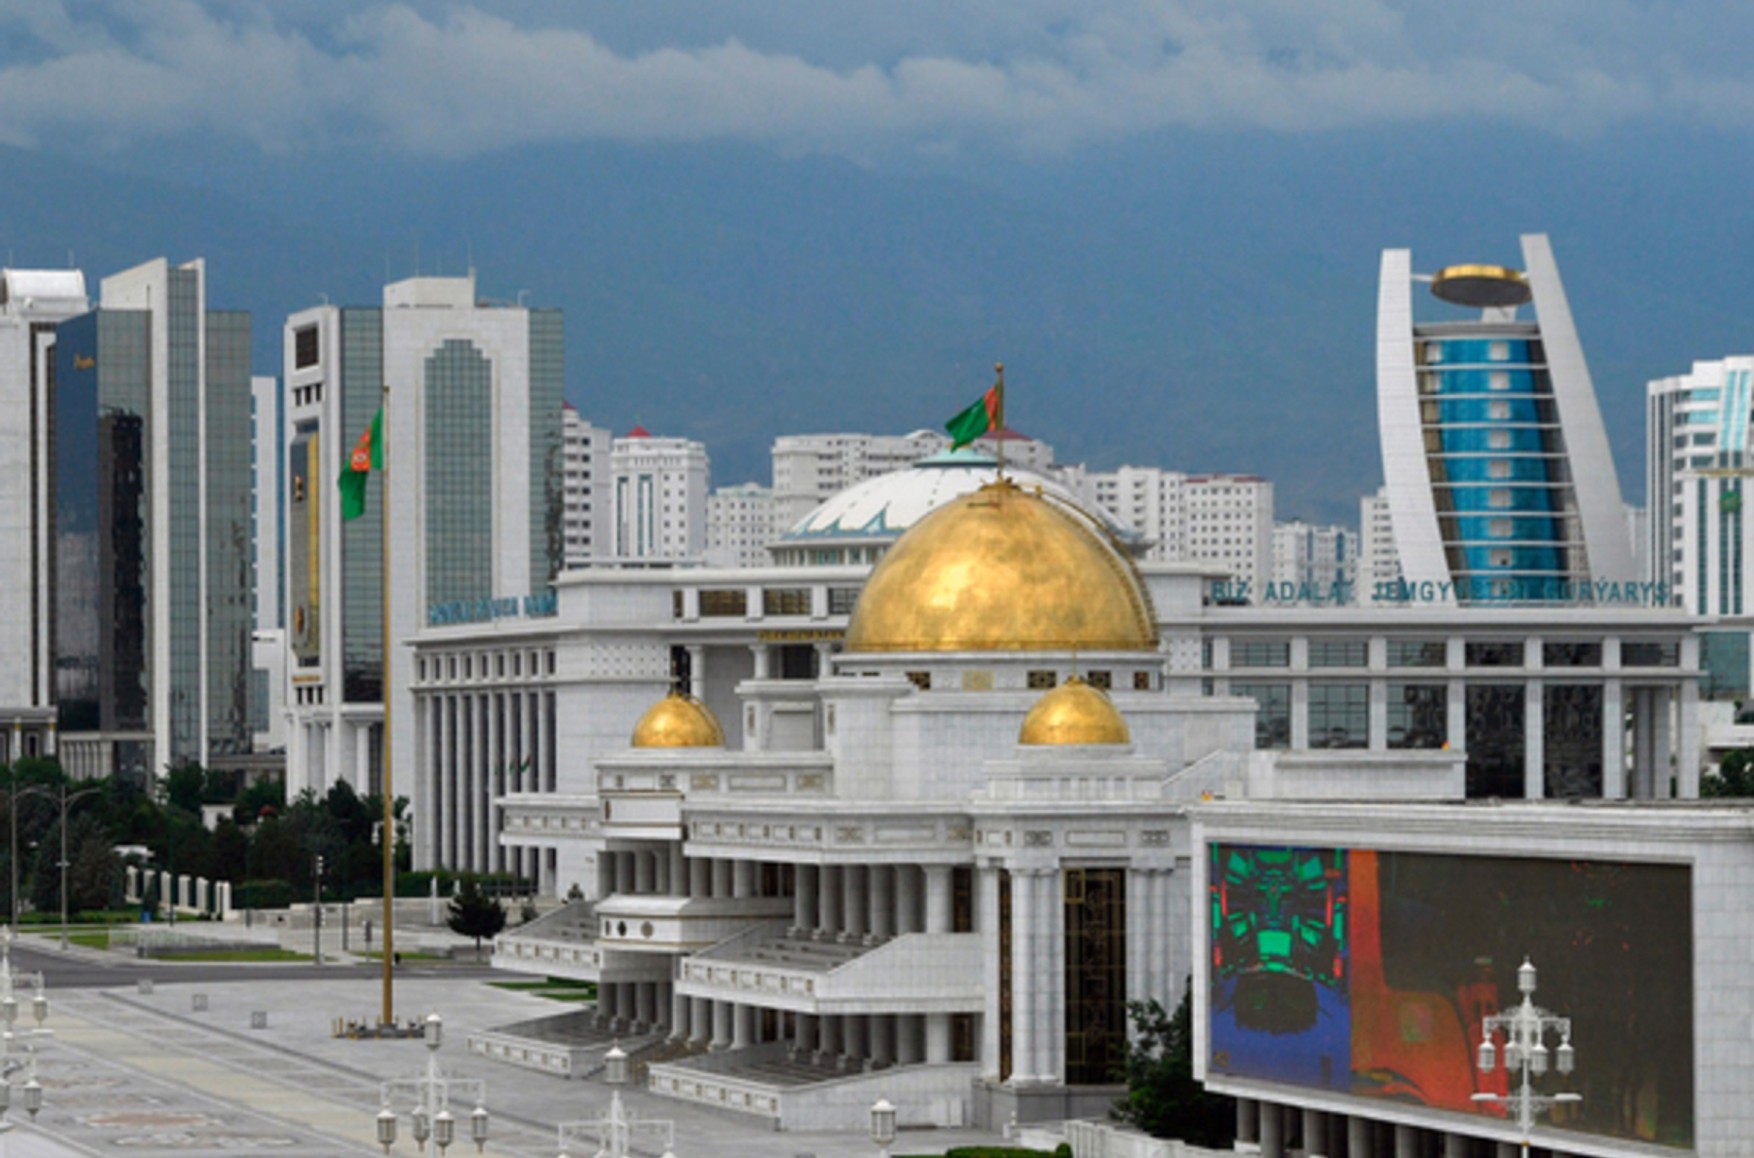 Всесвітній банк виключив Туркменію зі звіту про глобальні економічні перспективи через недостовірну статистики